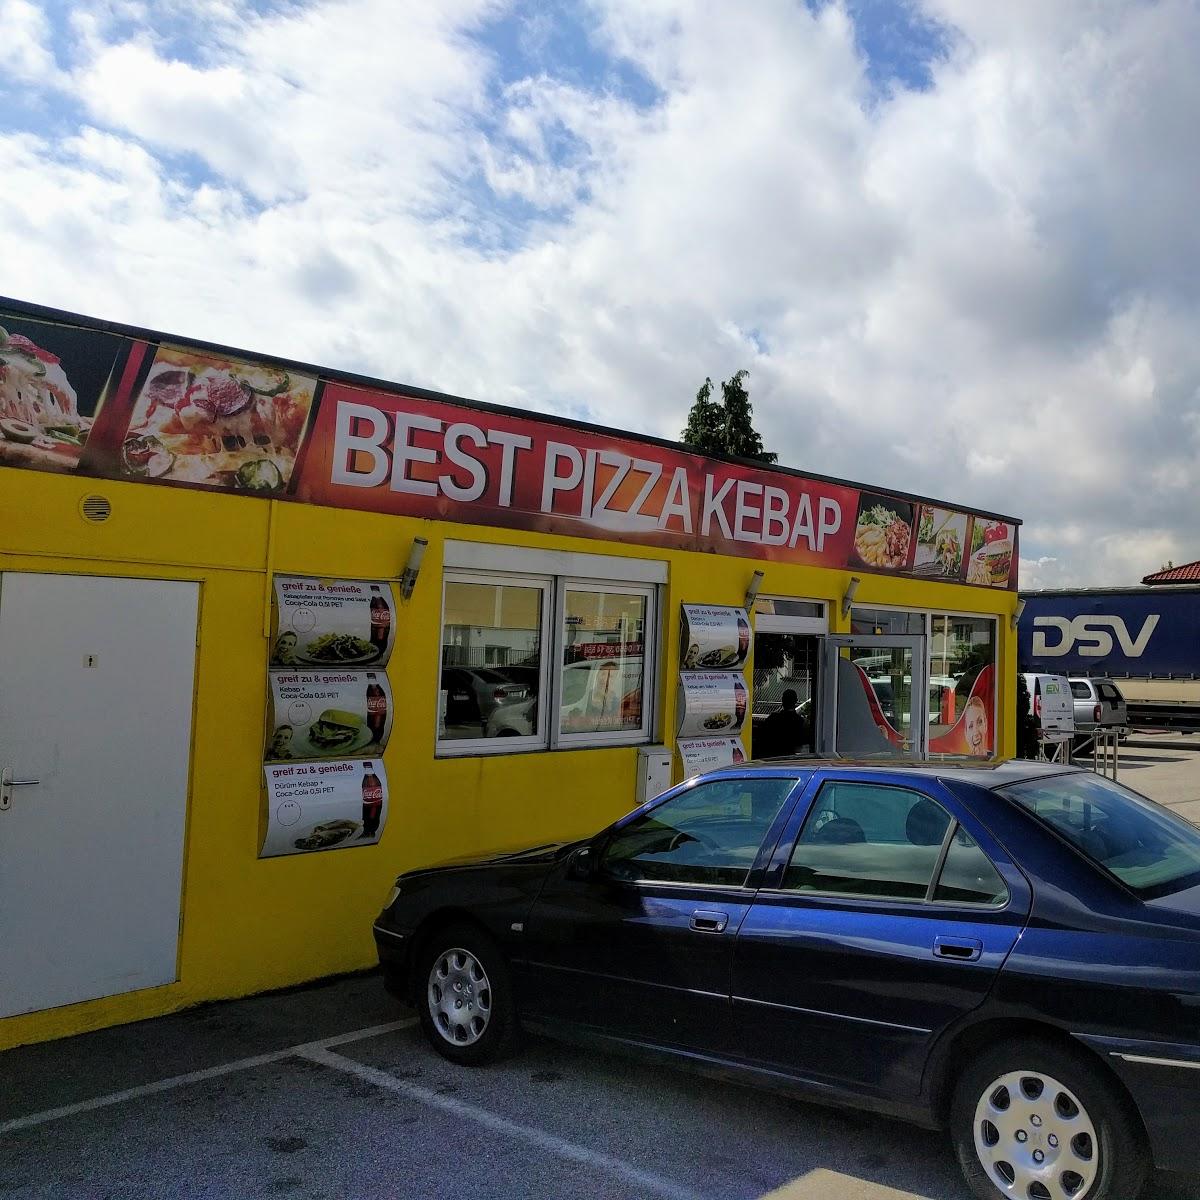 Restaurant "Best Pizza Kebap" in Enns